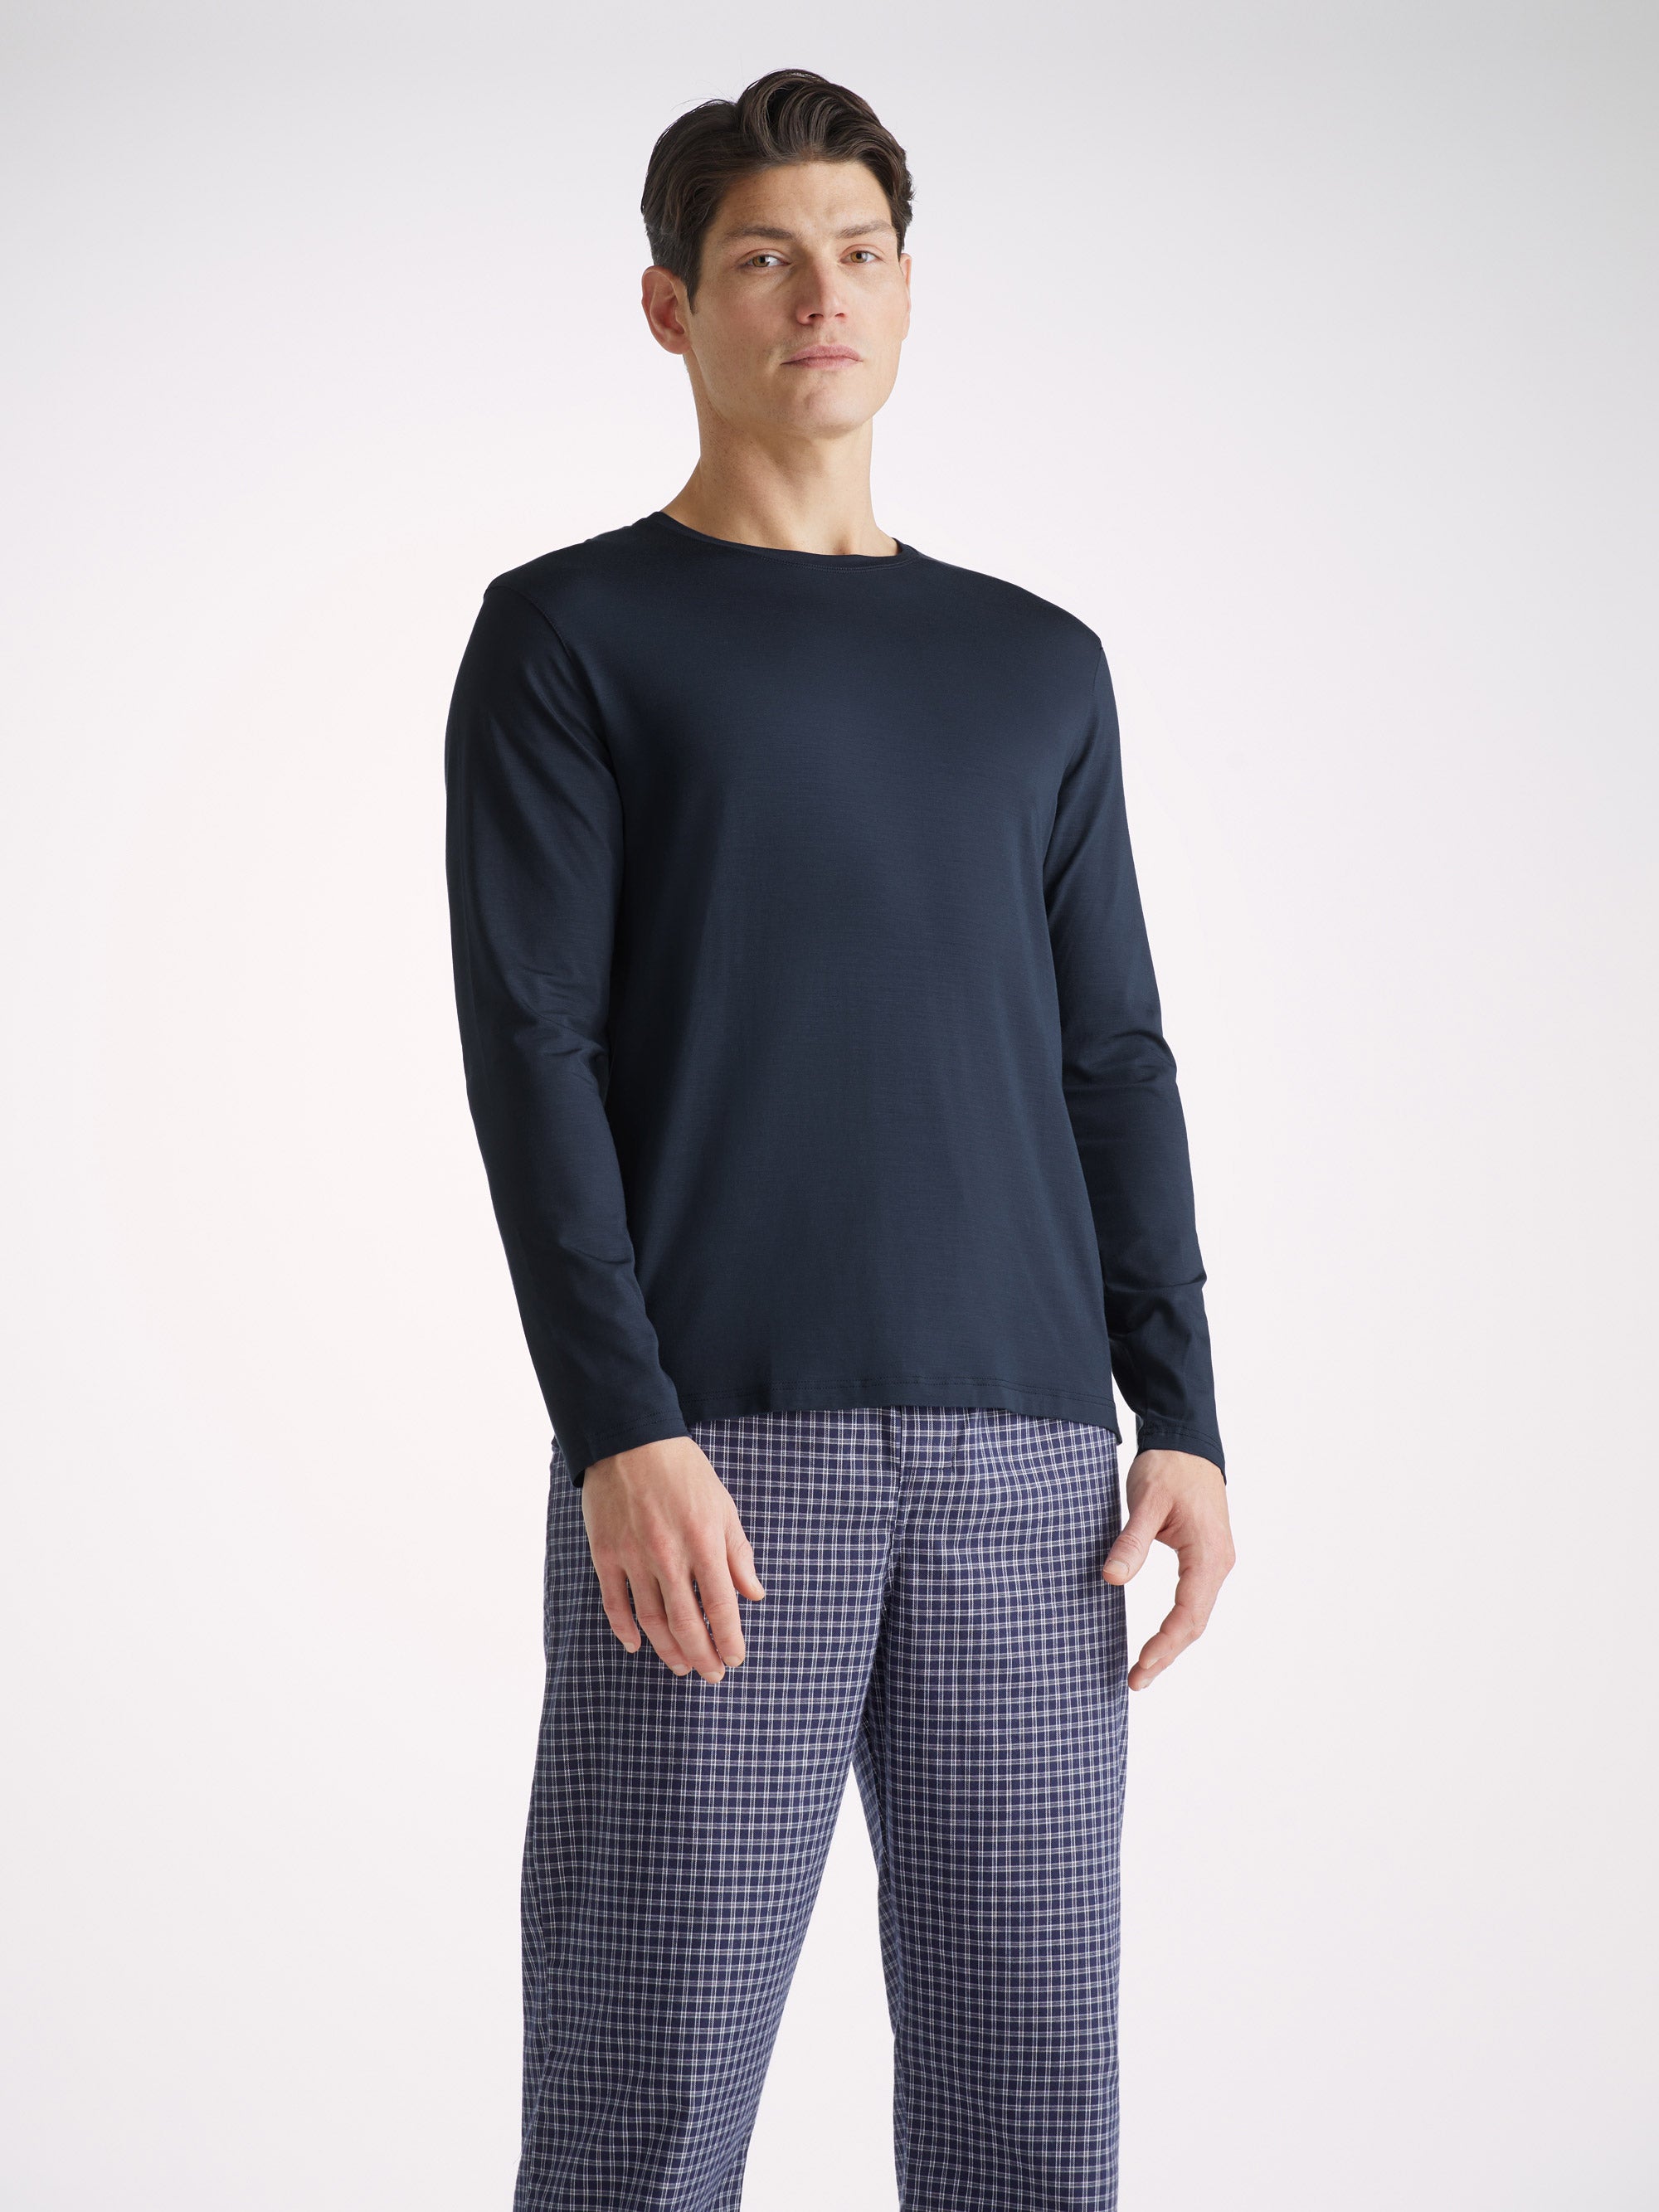 Men's Lounge Shorts Basel Micro Modal Stretch Black